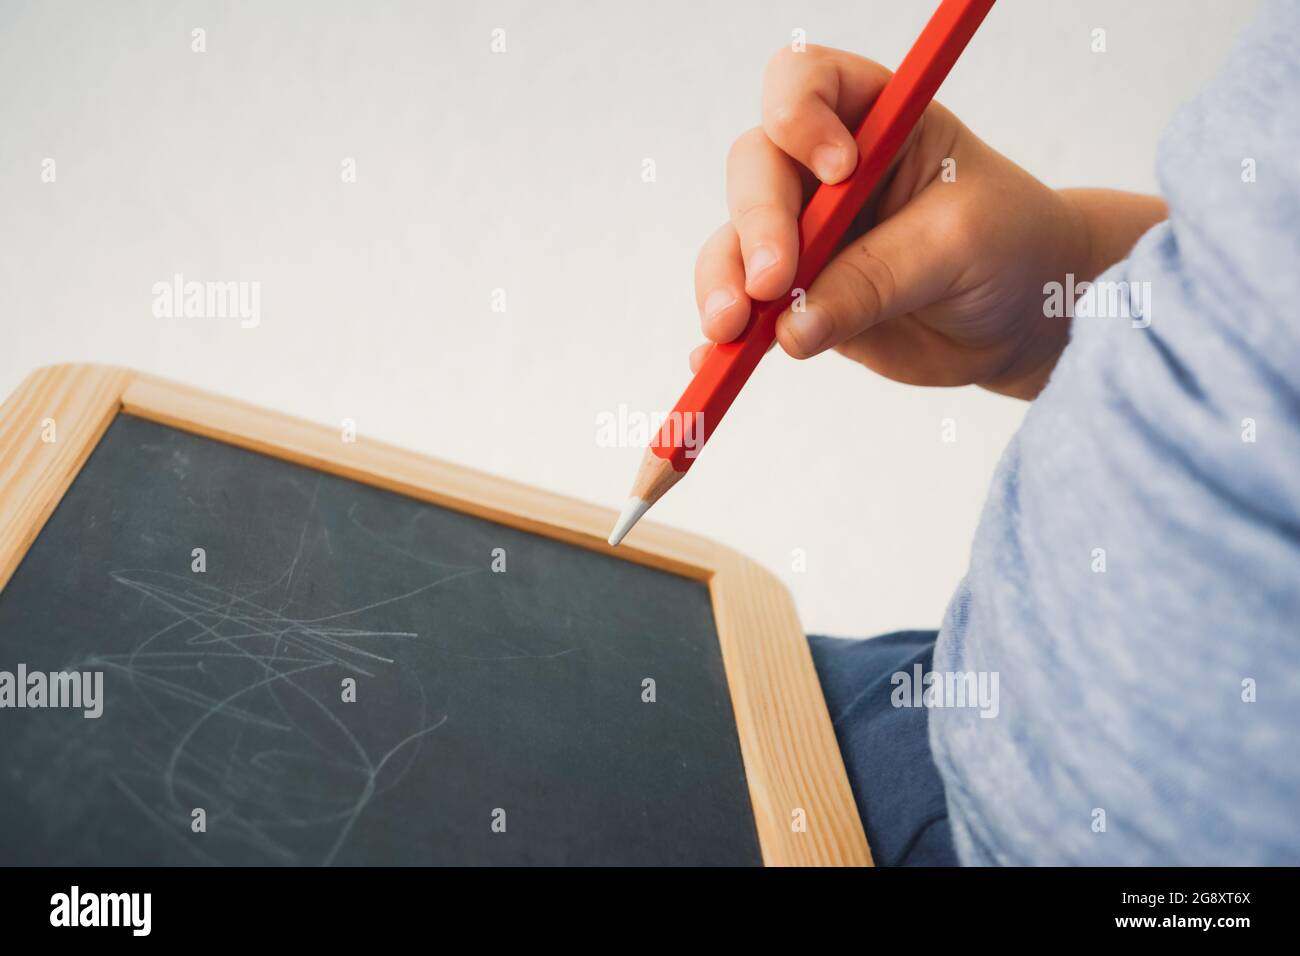 Kleinkind hält Kreidestift in der Hand und versucht, auf Tafel zu schreiben - kleiner Junge hält Kreide und schreibt, zeichnet auf Tafel Stockfoto